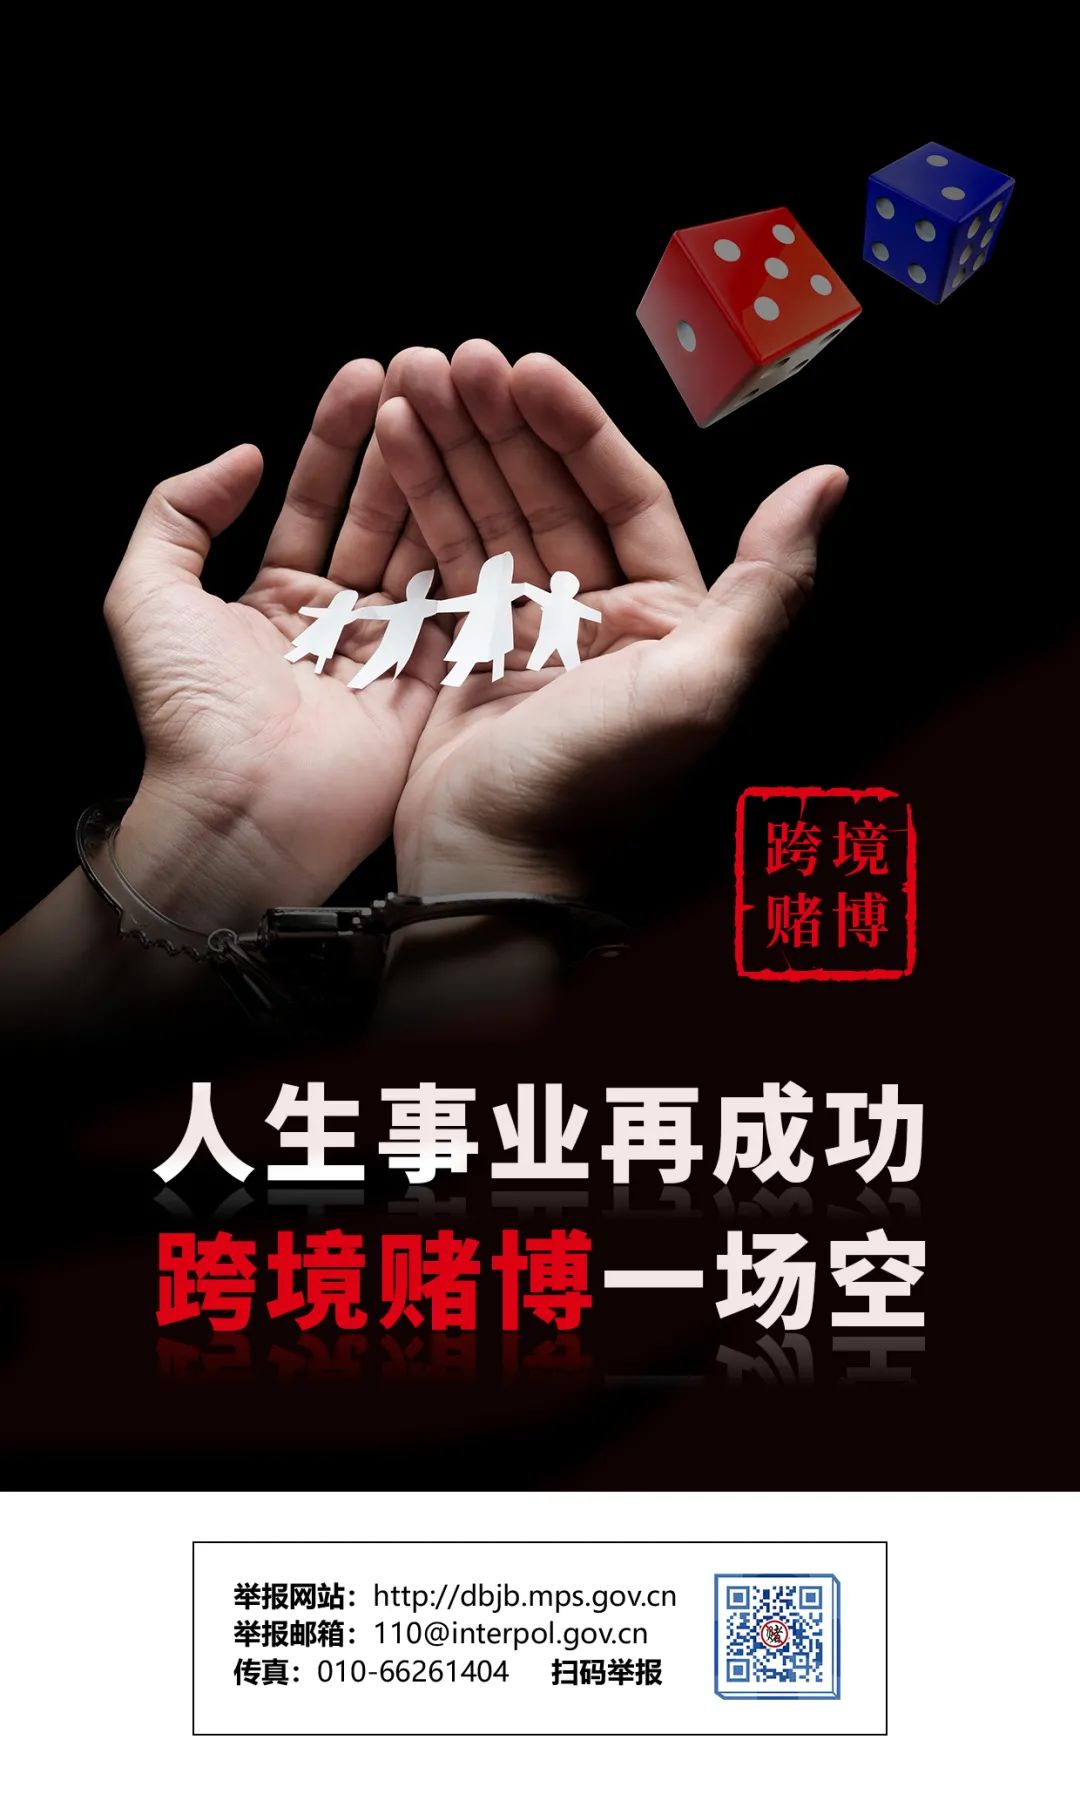 【除隐患 铸平安】上海金山警方开展"拒绝跨境赌博"主题宣传活动